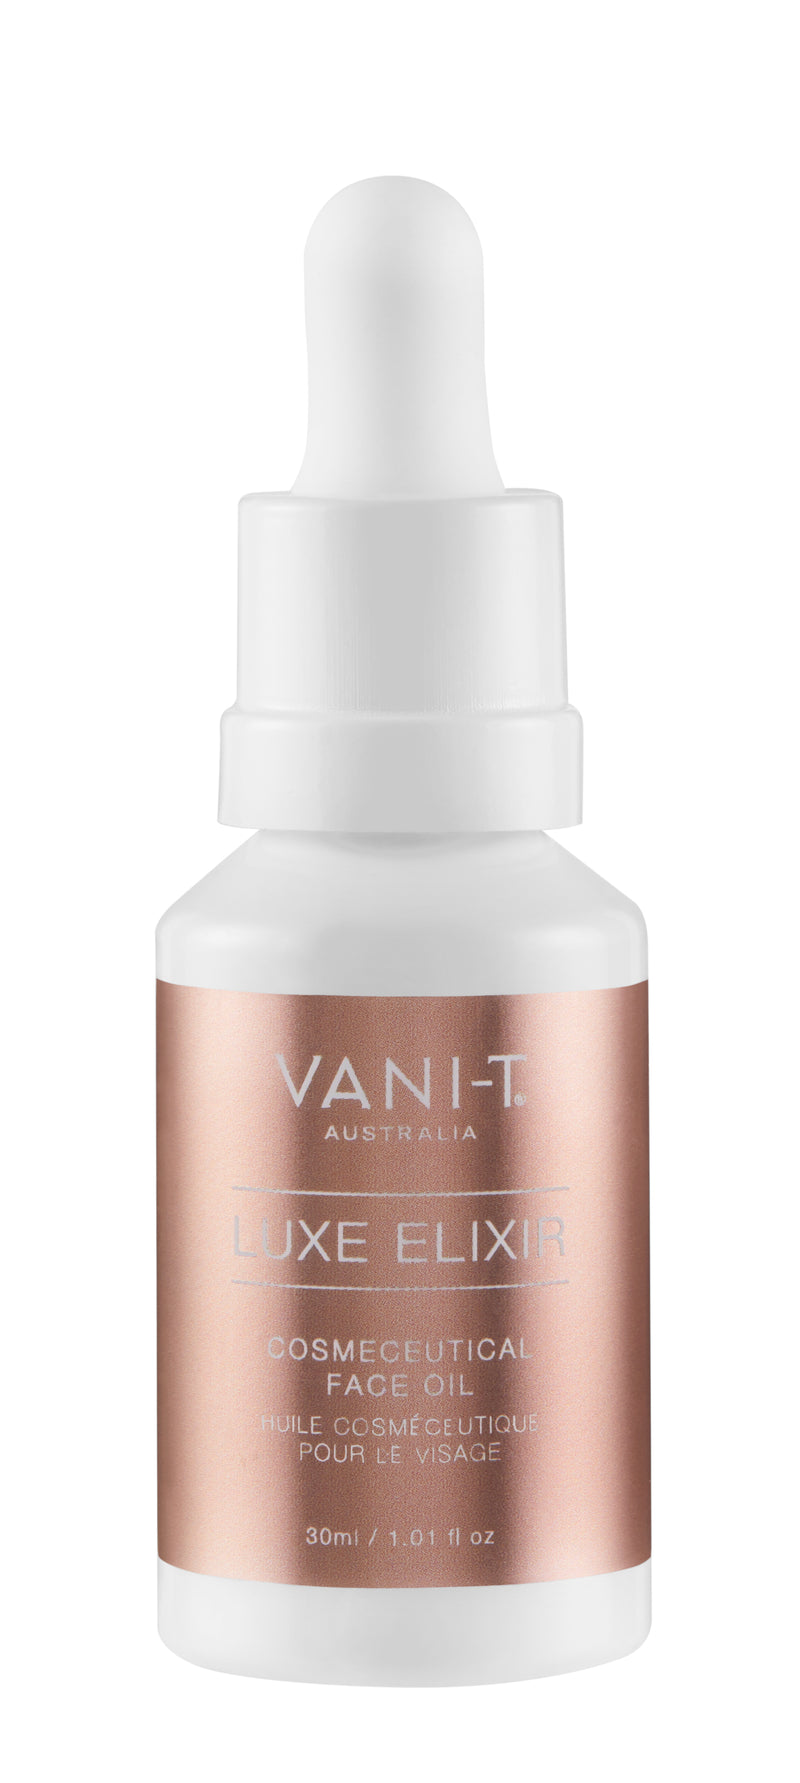 Luxe Elixir - Cosmeceutical Face Oil